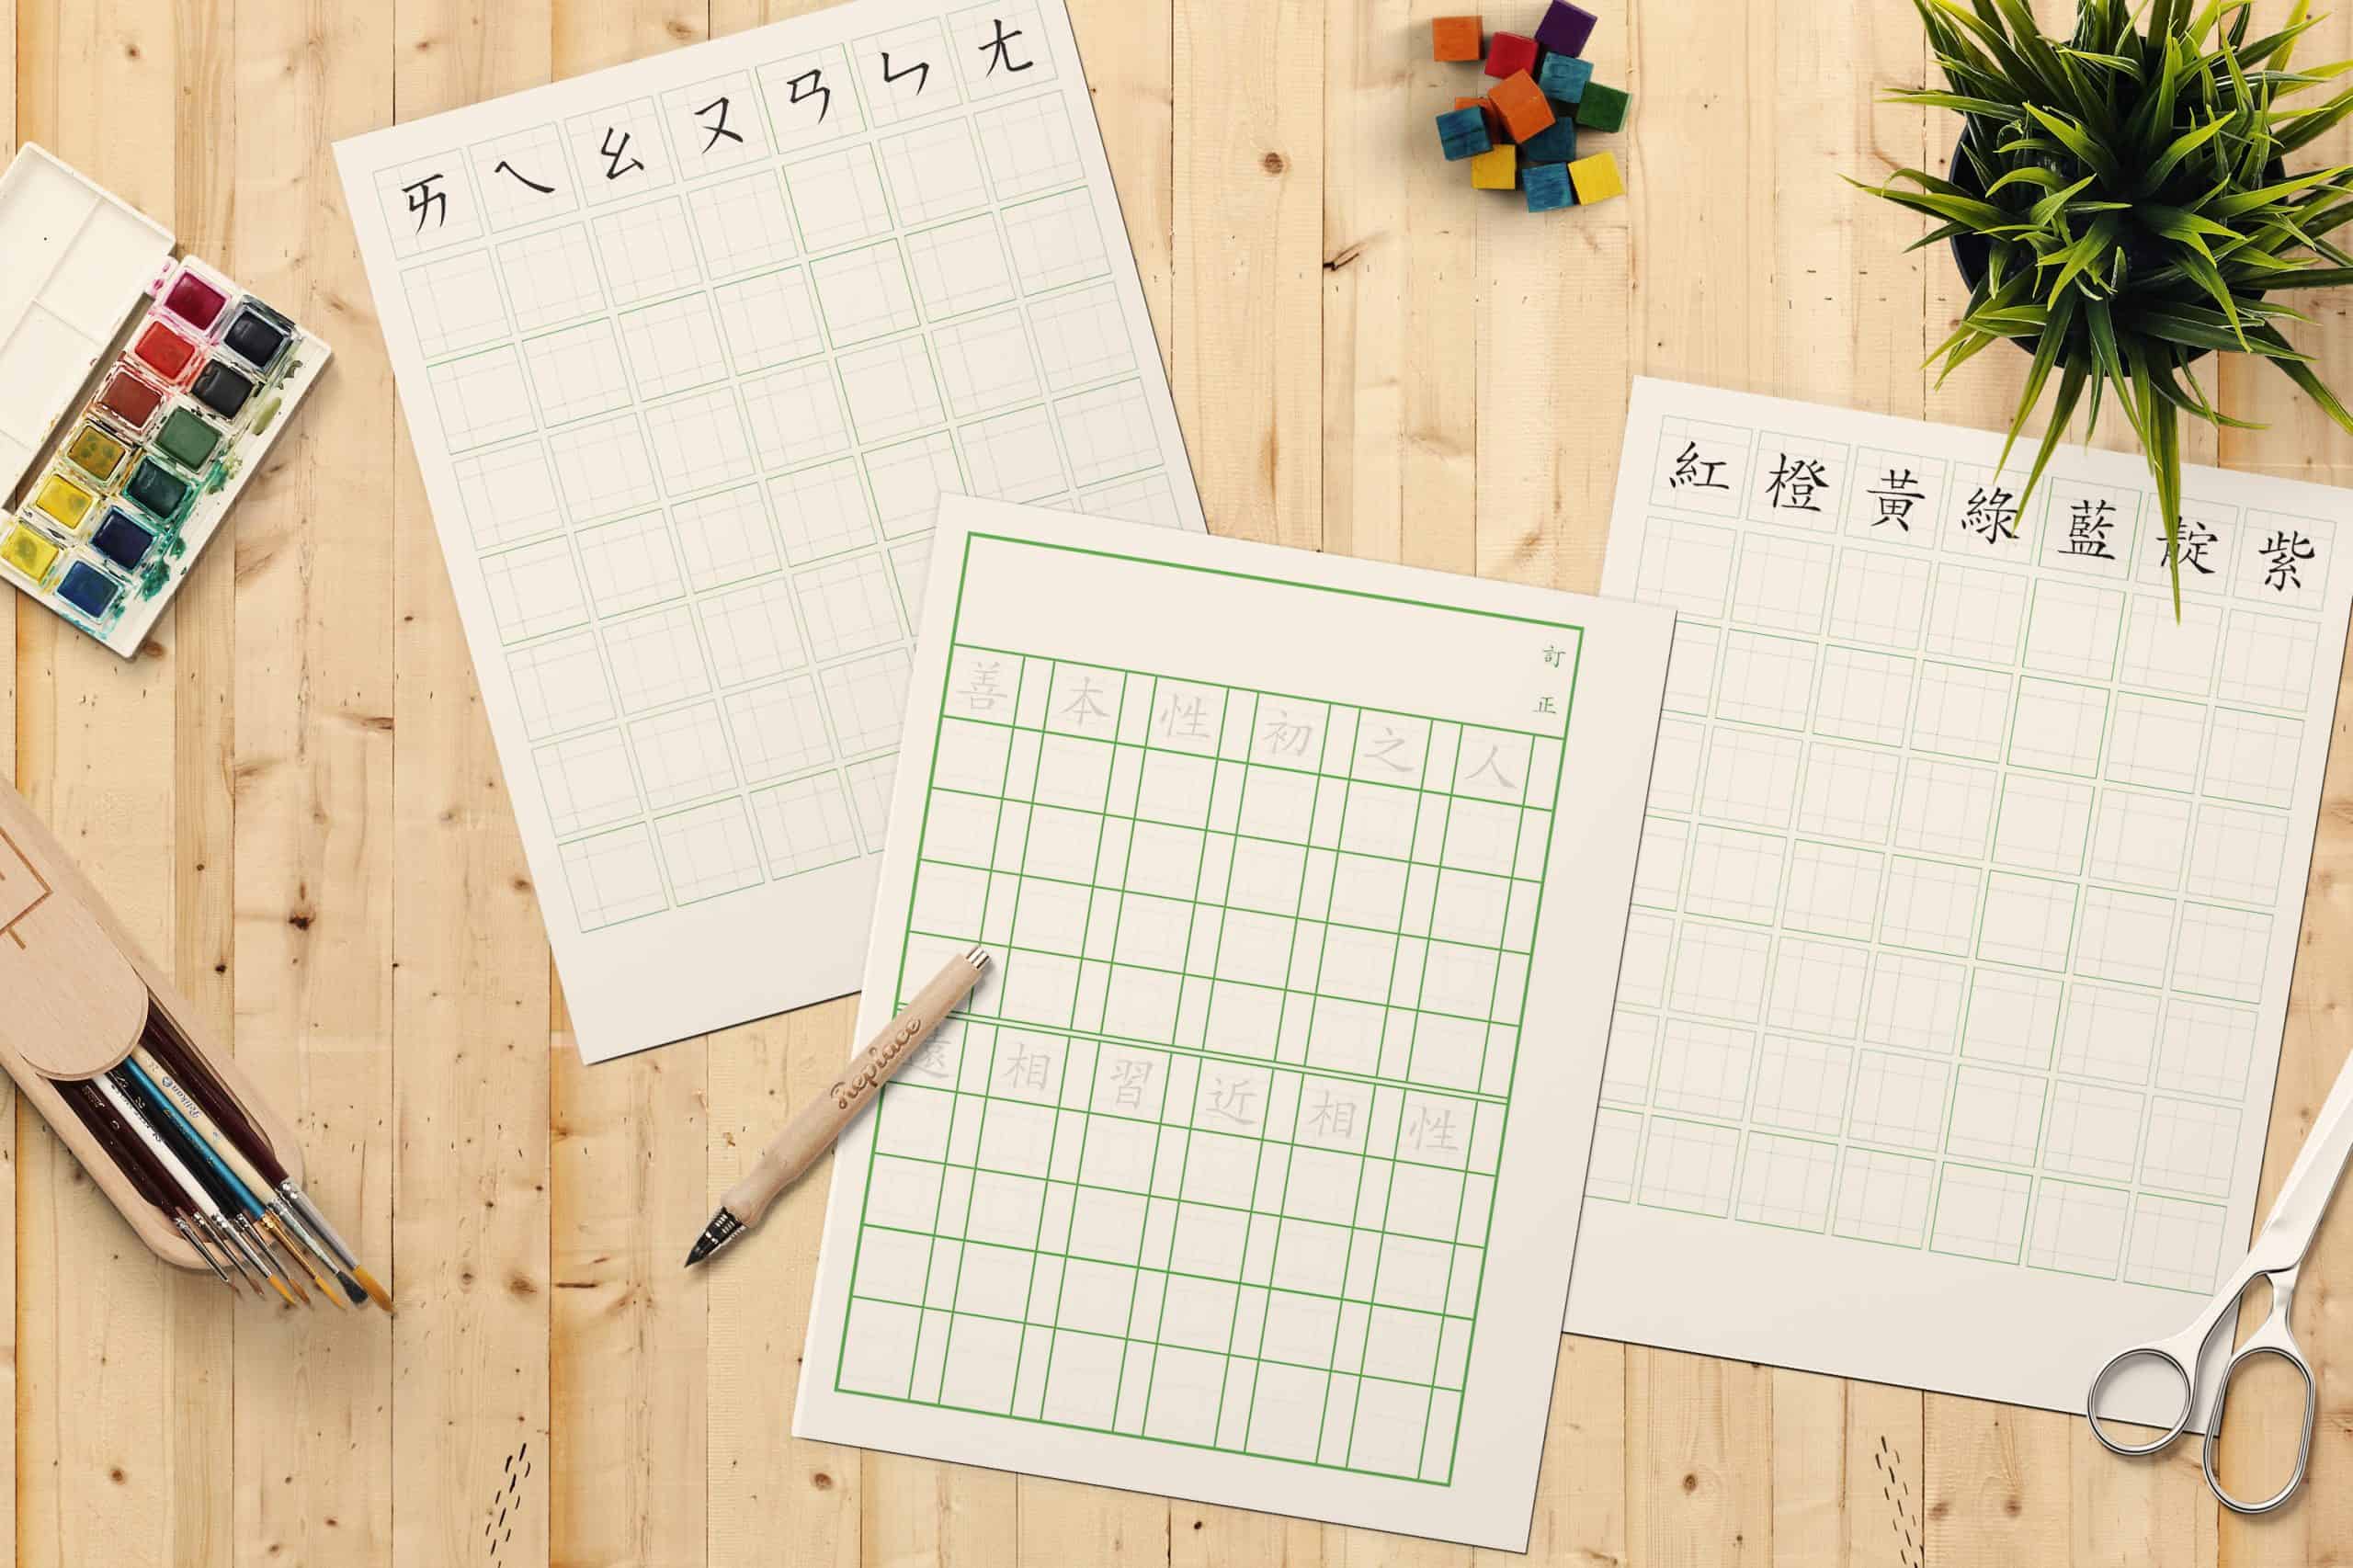 中文字練習格免費線上列印